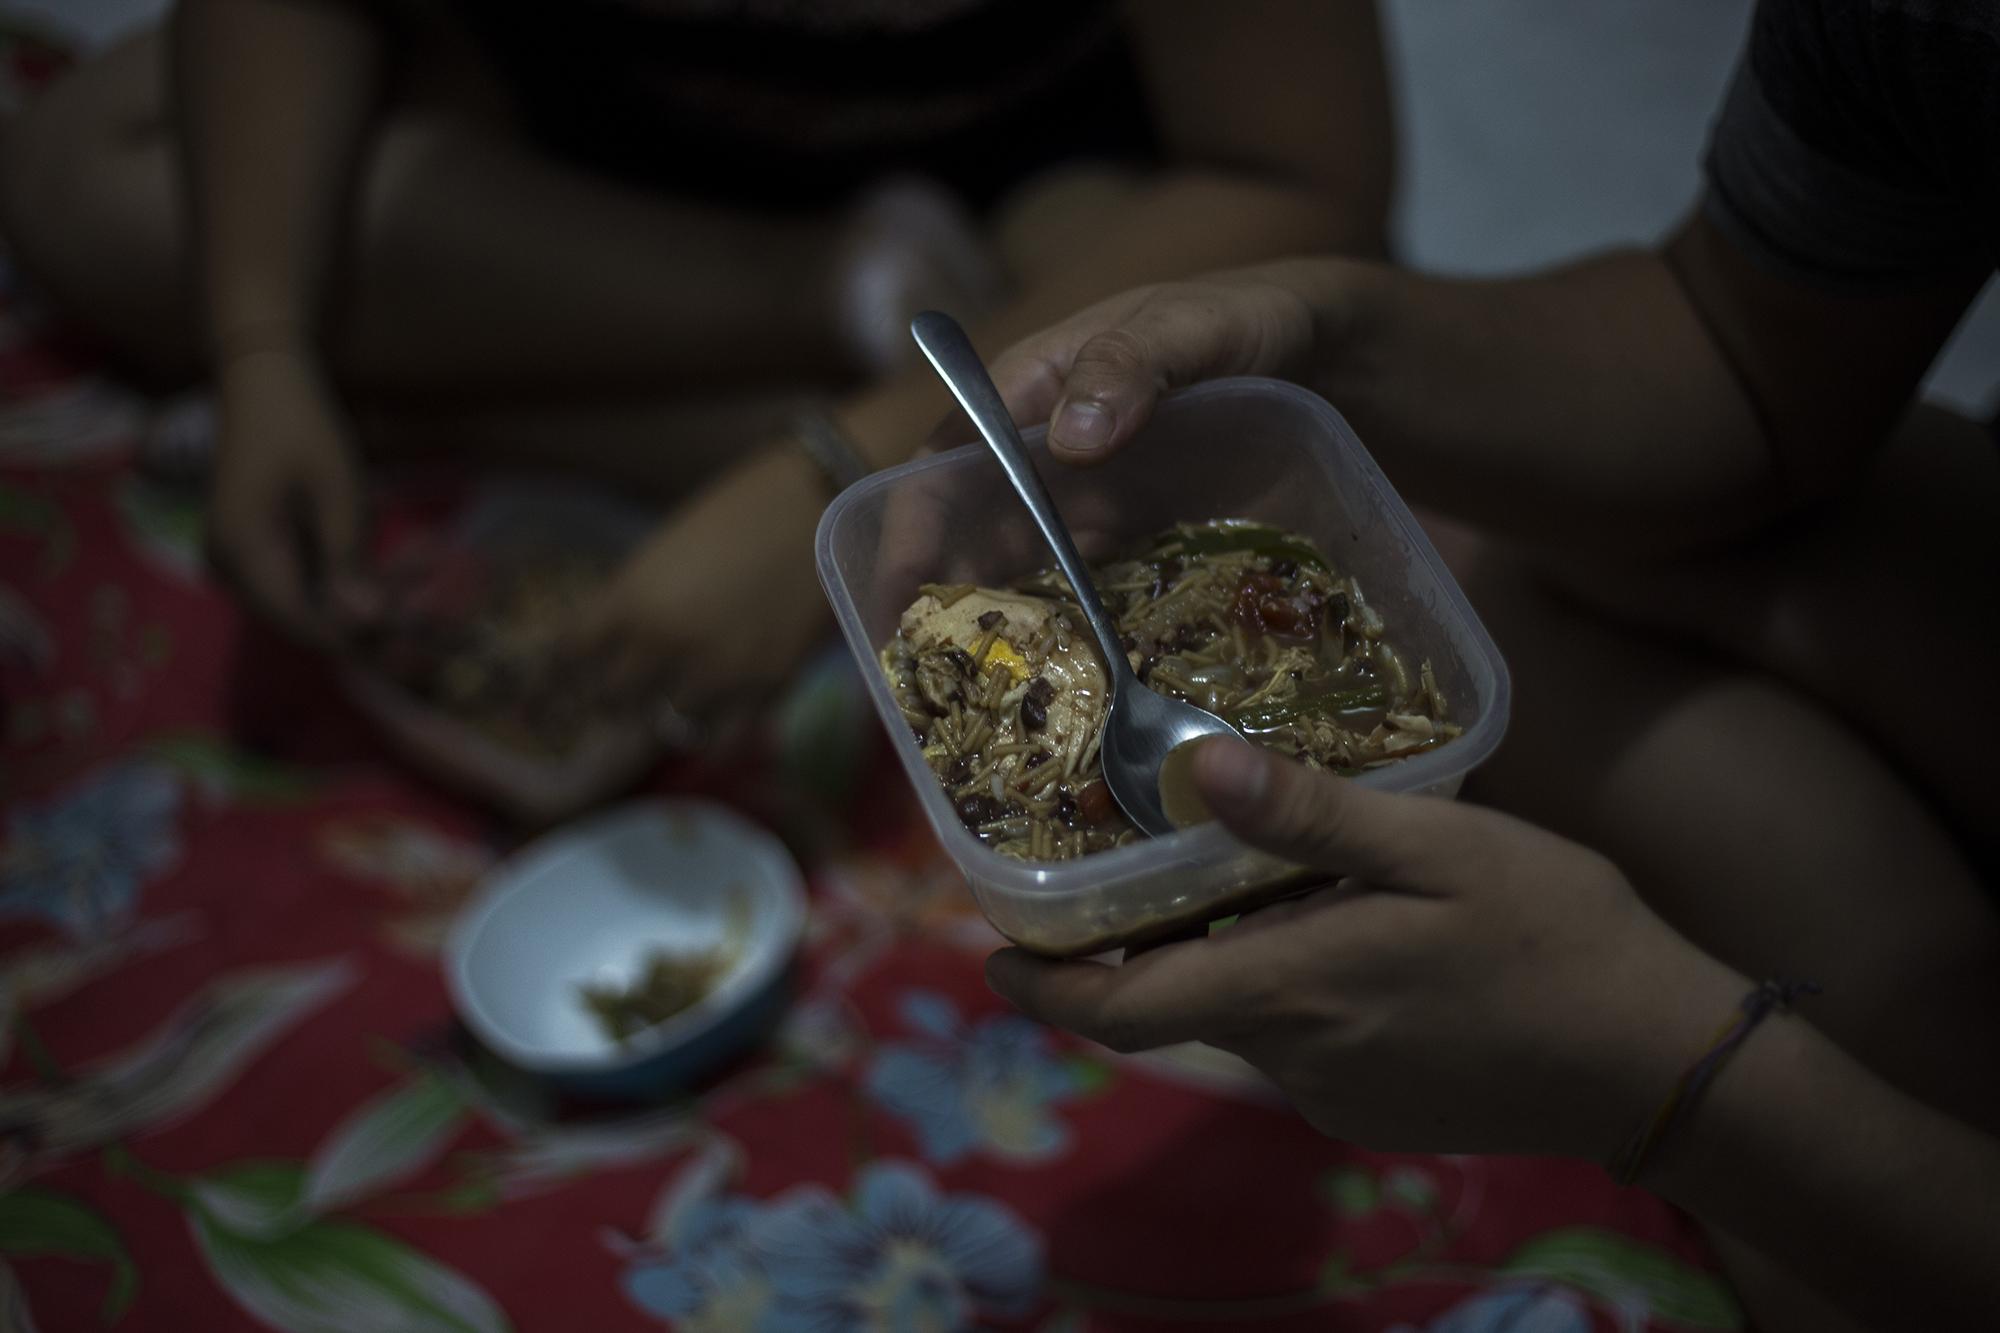 En una casa de seguridad, en las afueras de la ciudad de Managua, cuatro jóvenes rebeldes comparten una cena. Sopa de frijoles, fideos y verduras forman el banquete de los que en mayo y junio se tomaron las calles y que hoy conviven en clandestinidad. Foto: Víctor Peña.